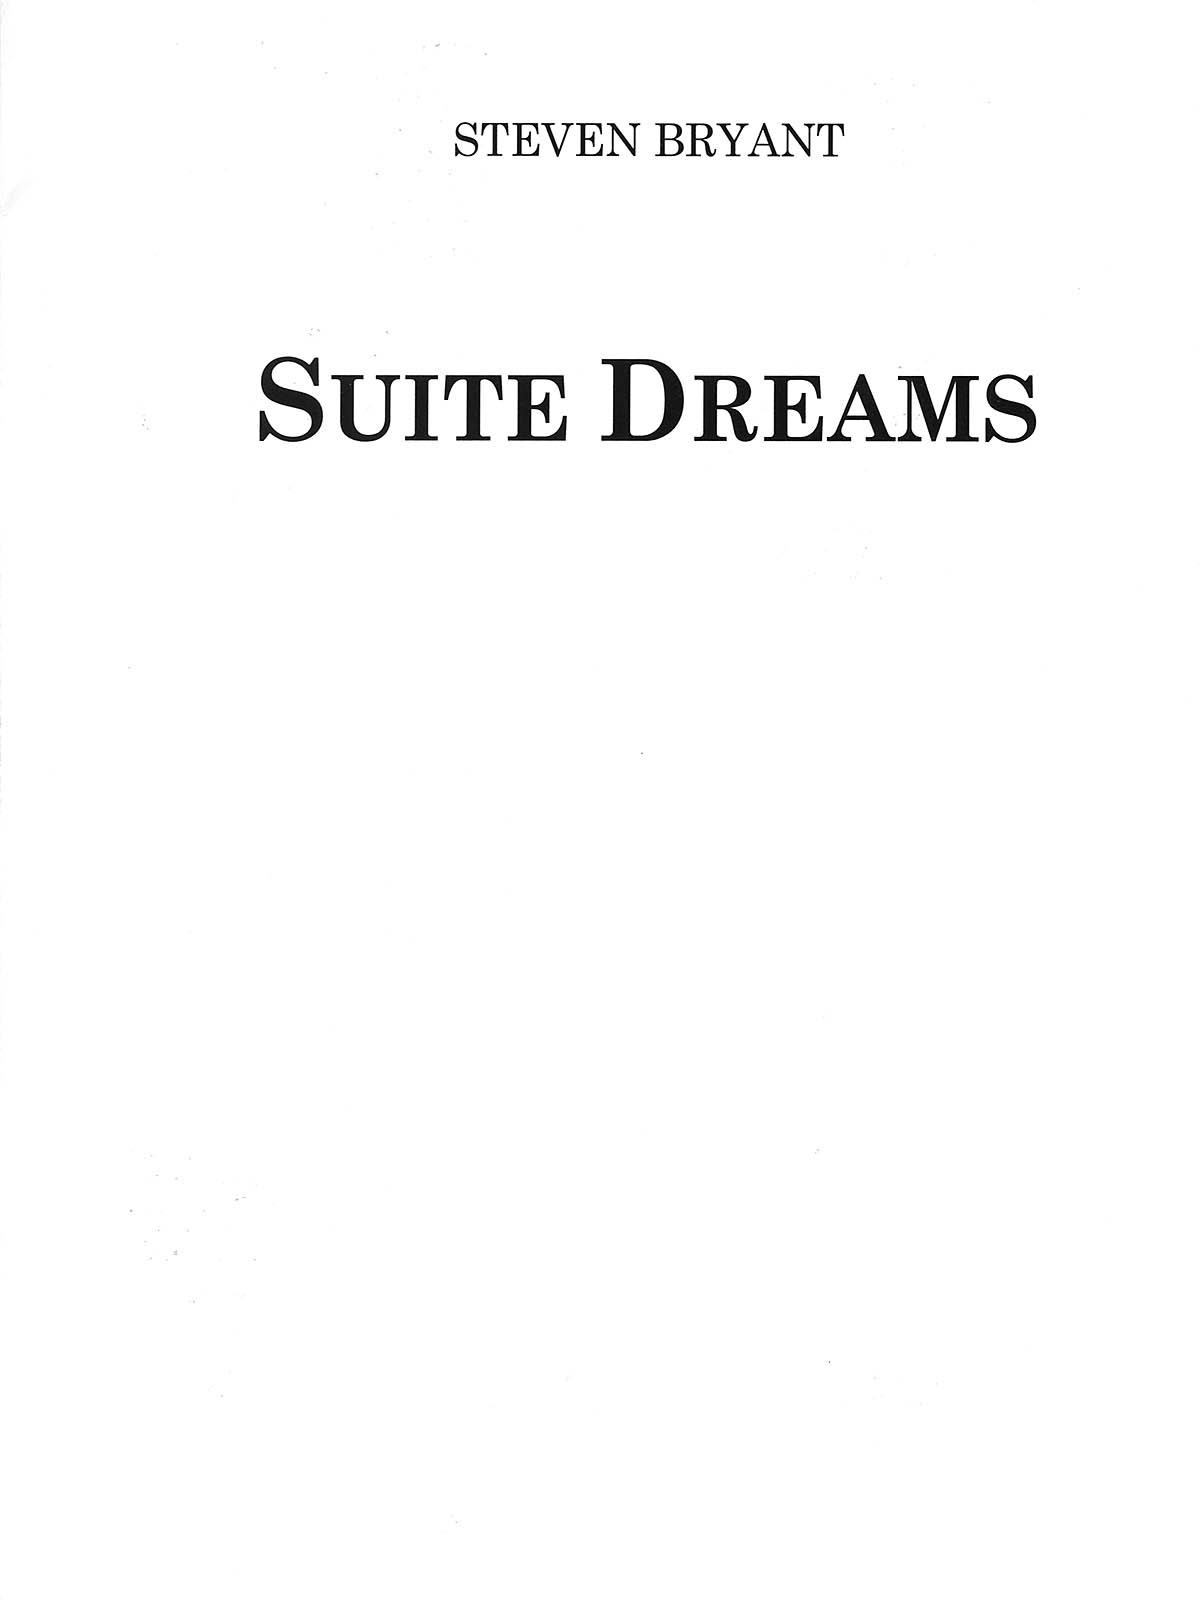 Steven Bryant: Suite Dreams Concert Band Score Only: Concert Band: Score